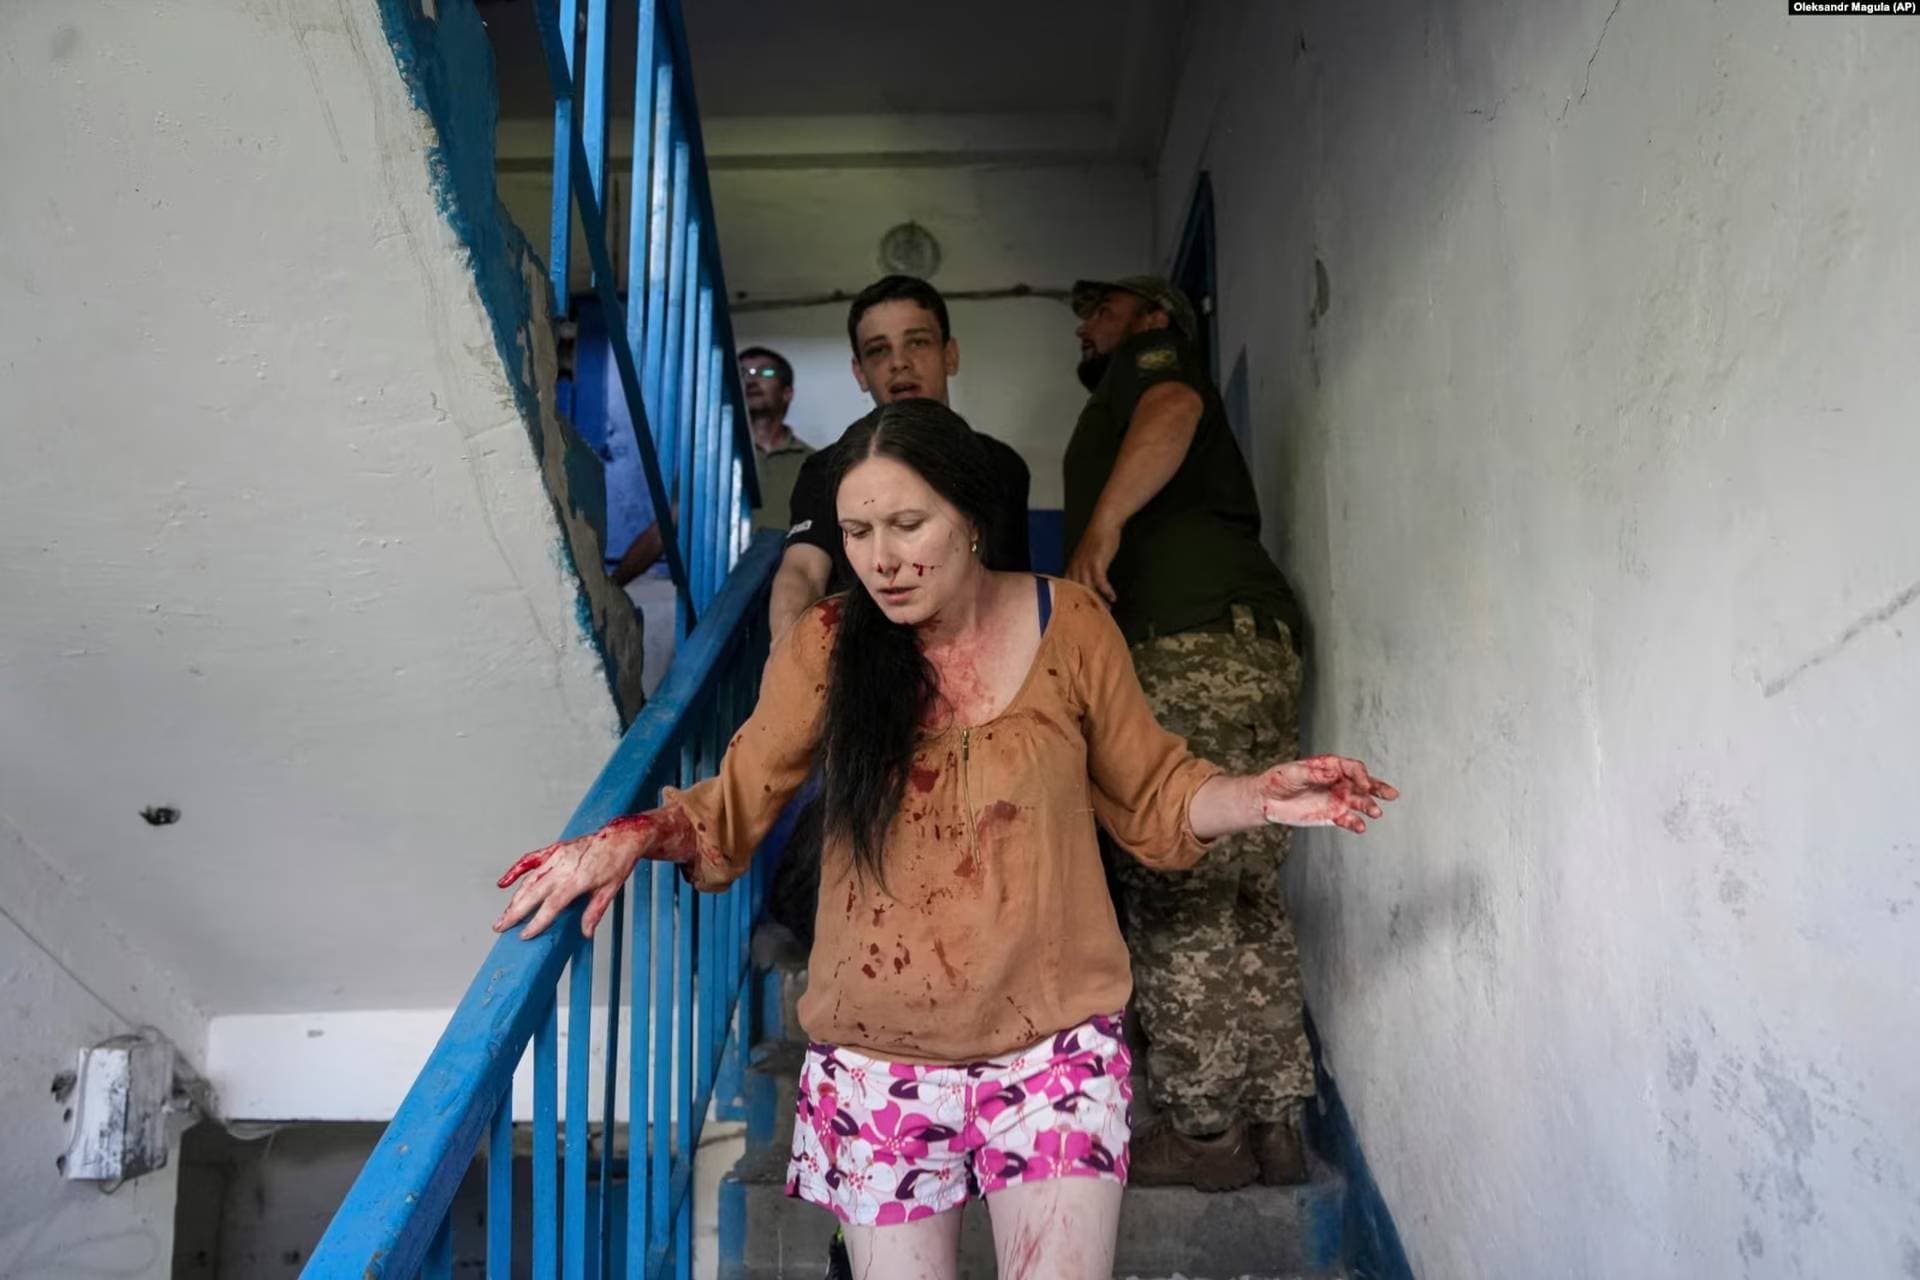 An injured woman runs down a staircase